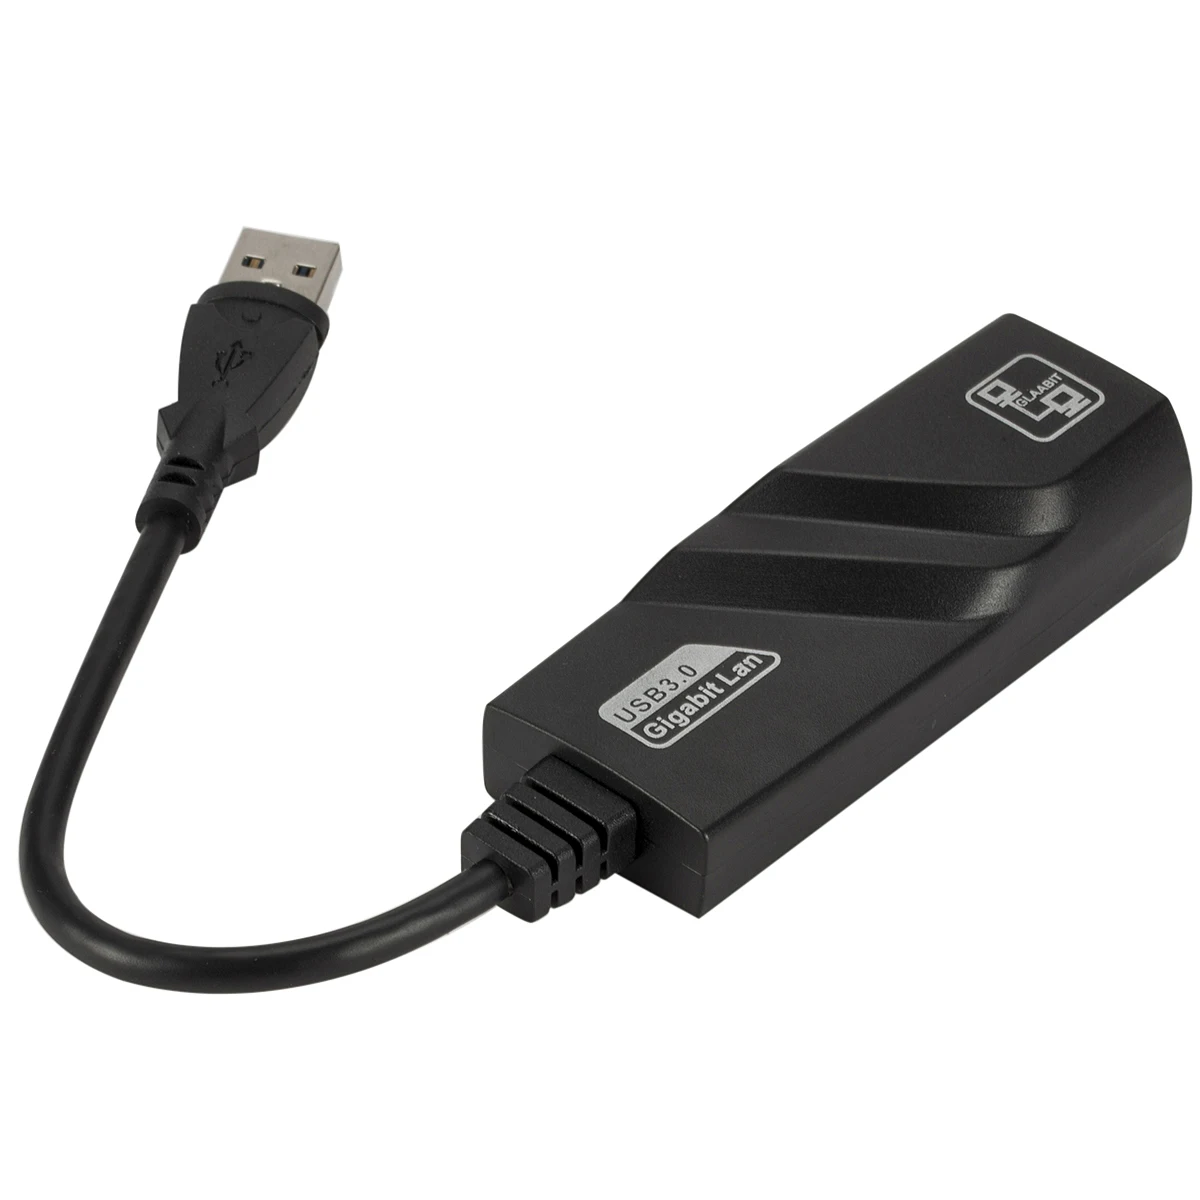 USB Ethernet адаптер сетевой карты Usb 3,0 RJ45 LAN гигабит Интернет для компьютера для ноутбука Macbook USB Ethernet